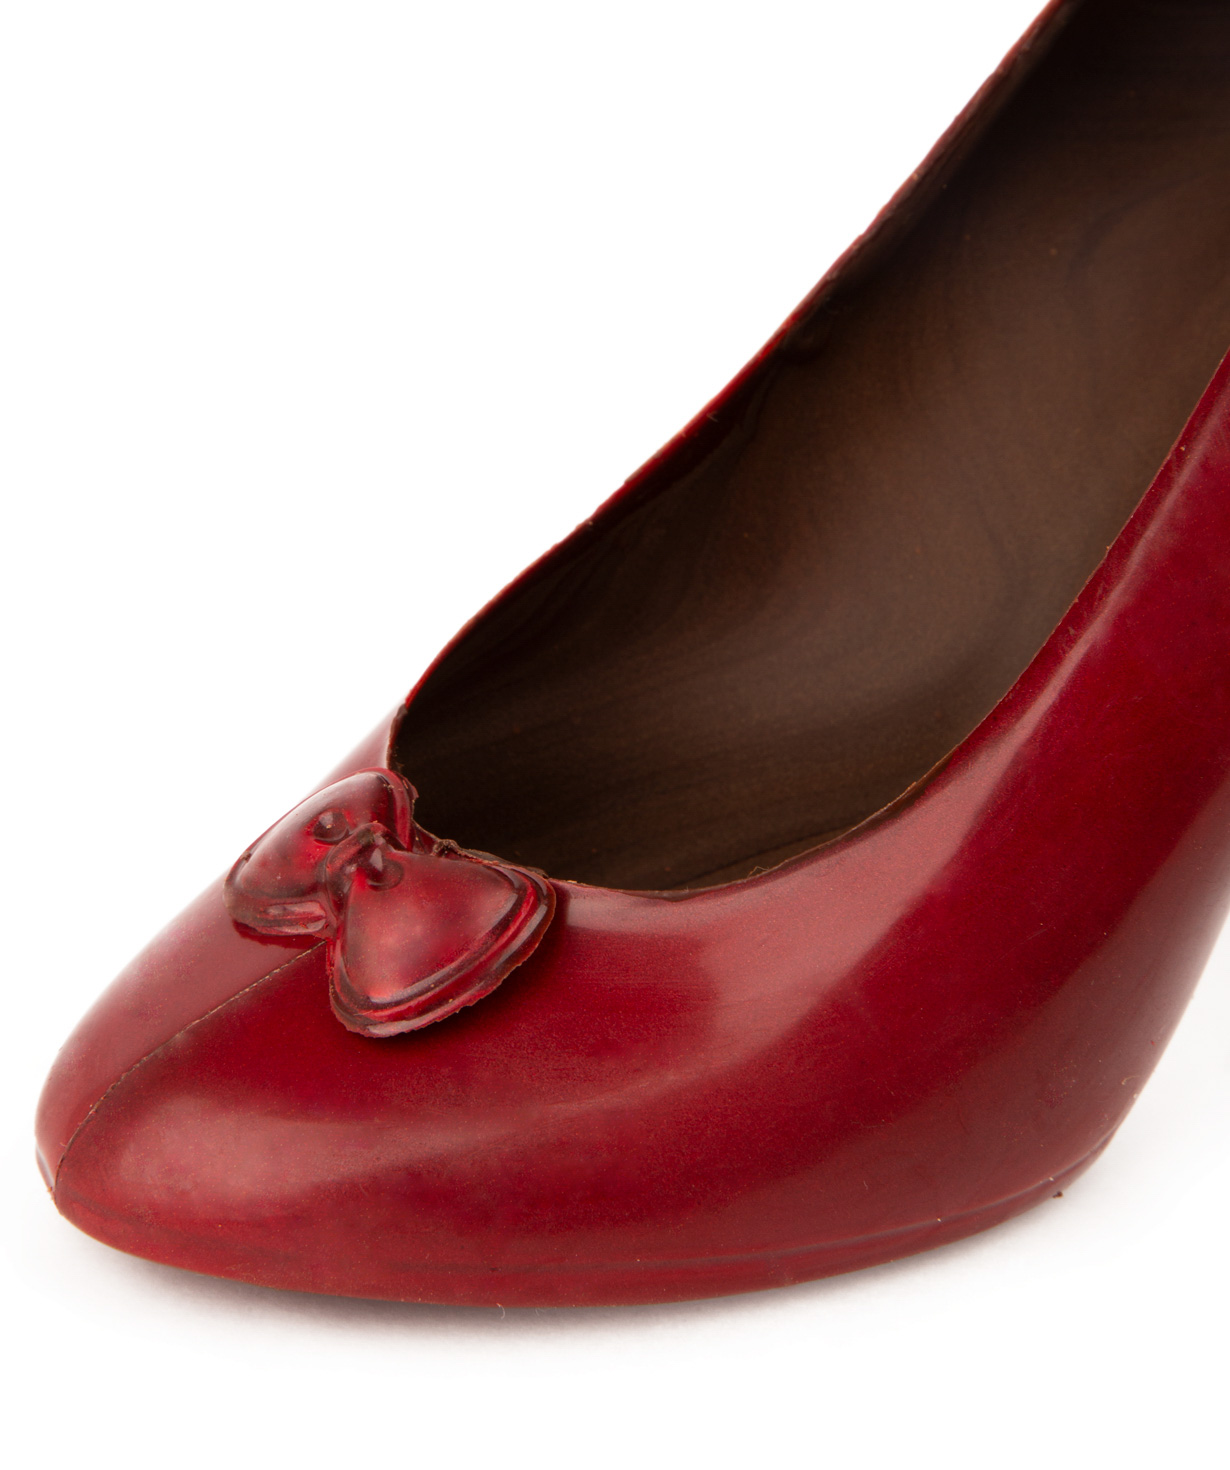 Chocolate `Lara Chocolate` shoe